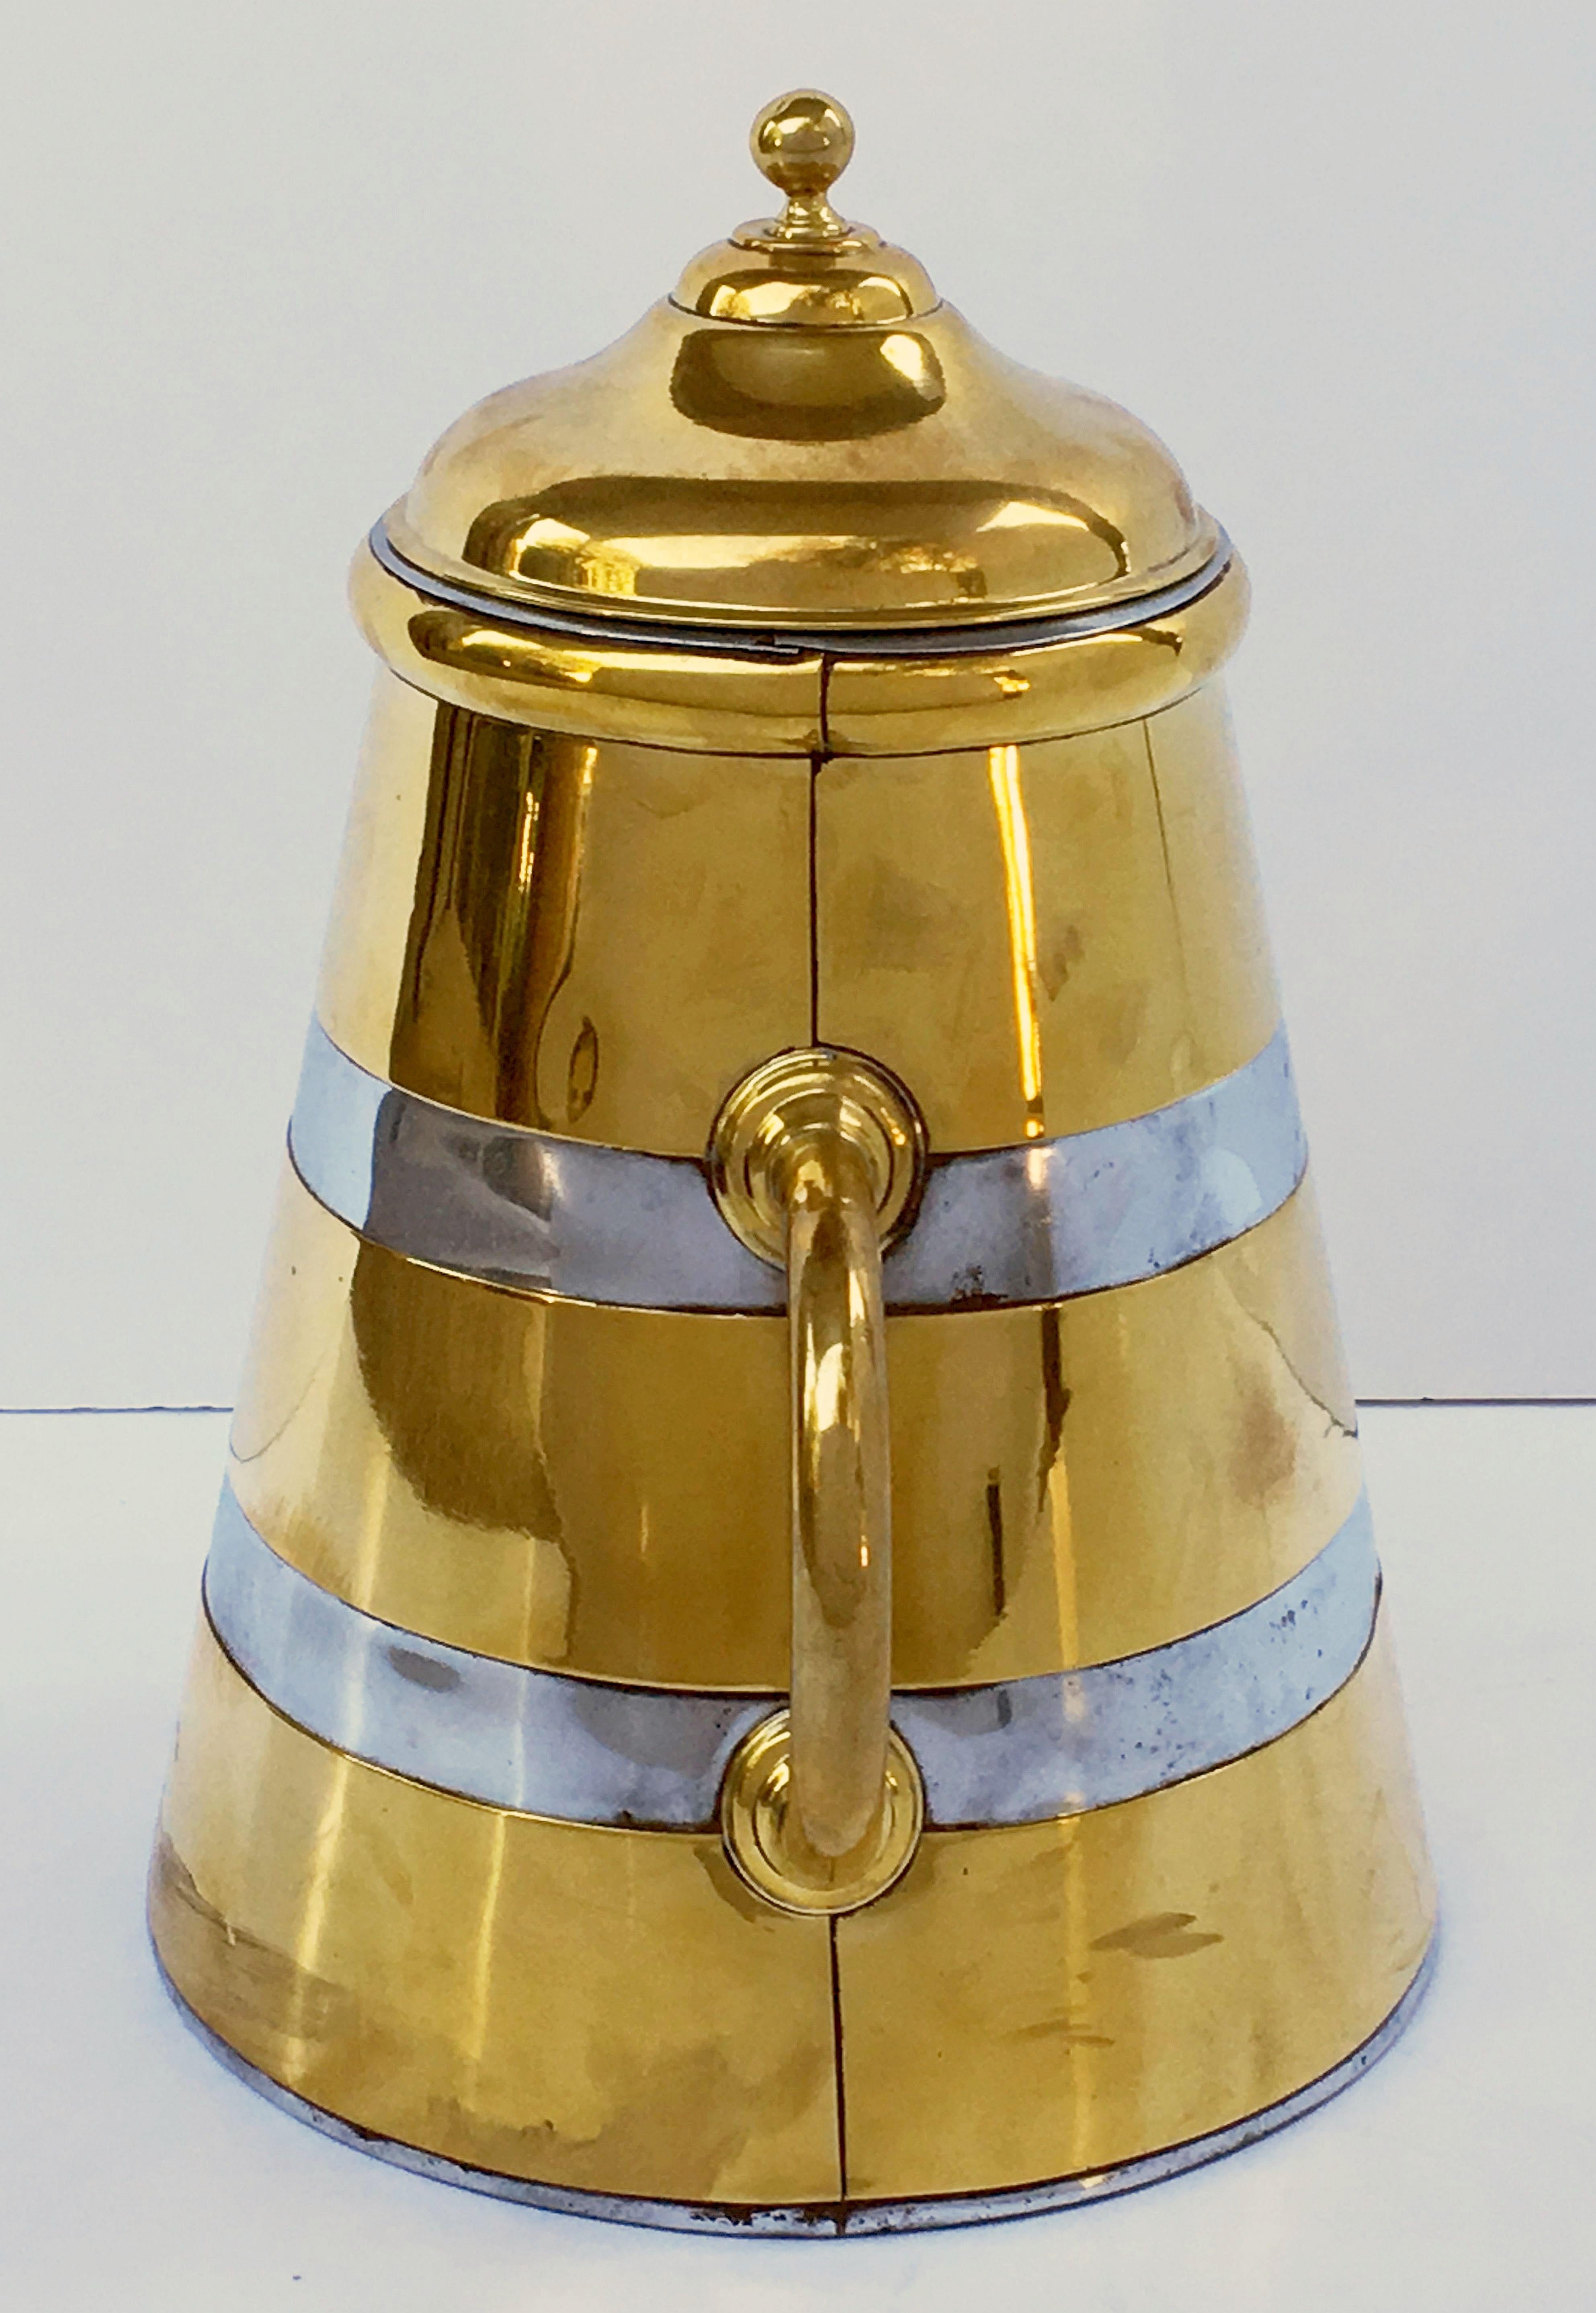 Zylindrische Shop-Behälter aus Messing und Zinn, 'Individly Priced' (19. Jahrhundert)